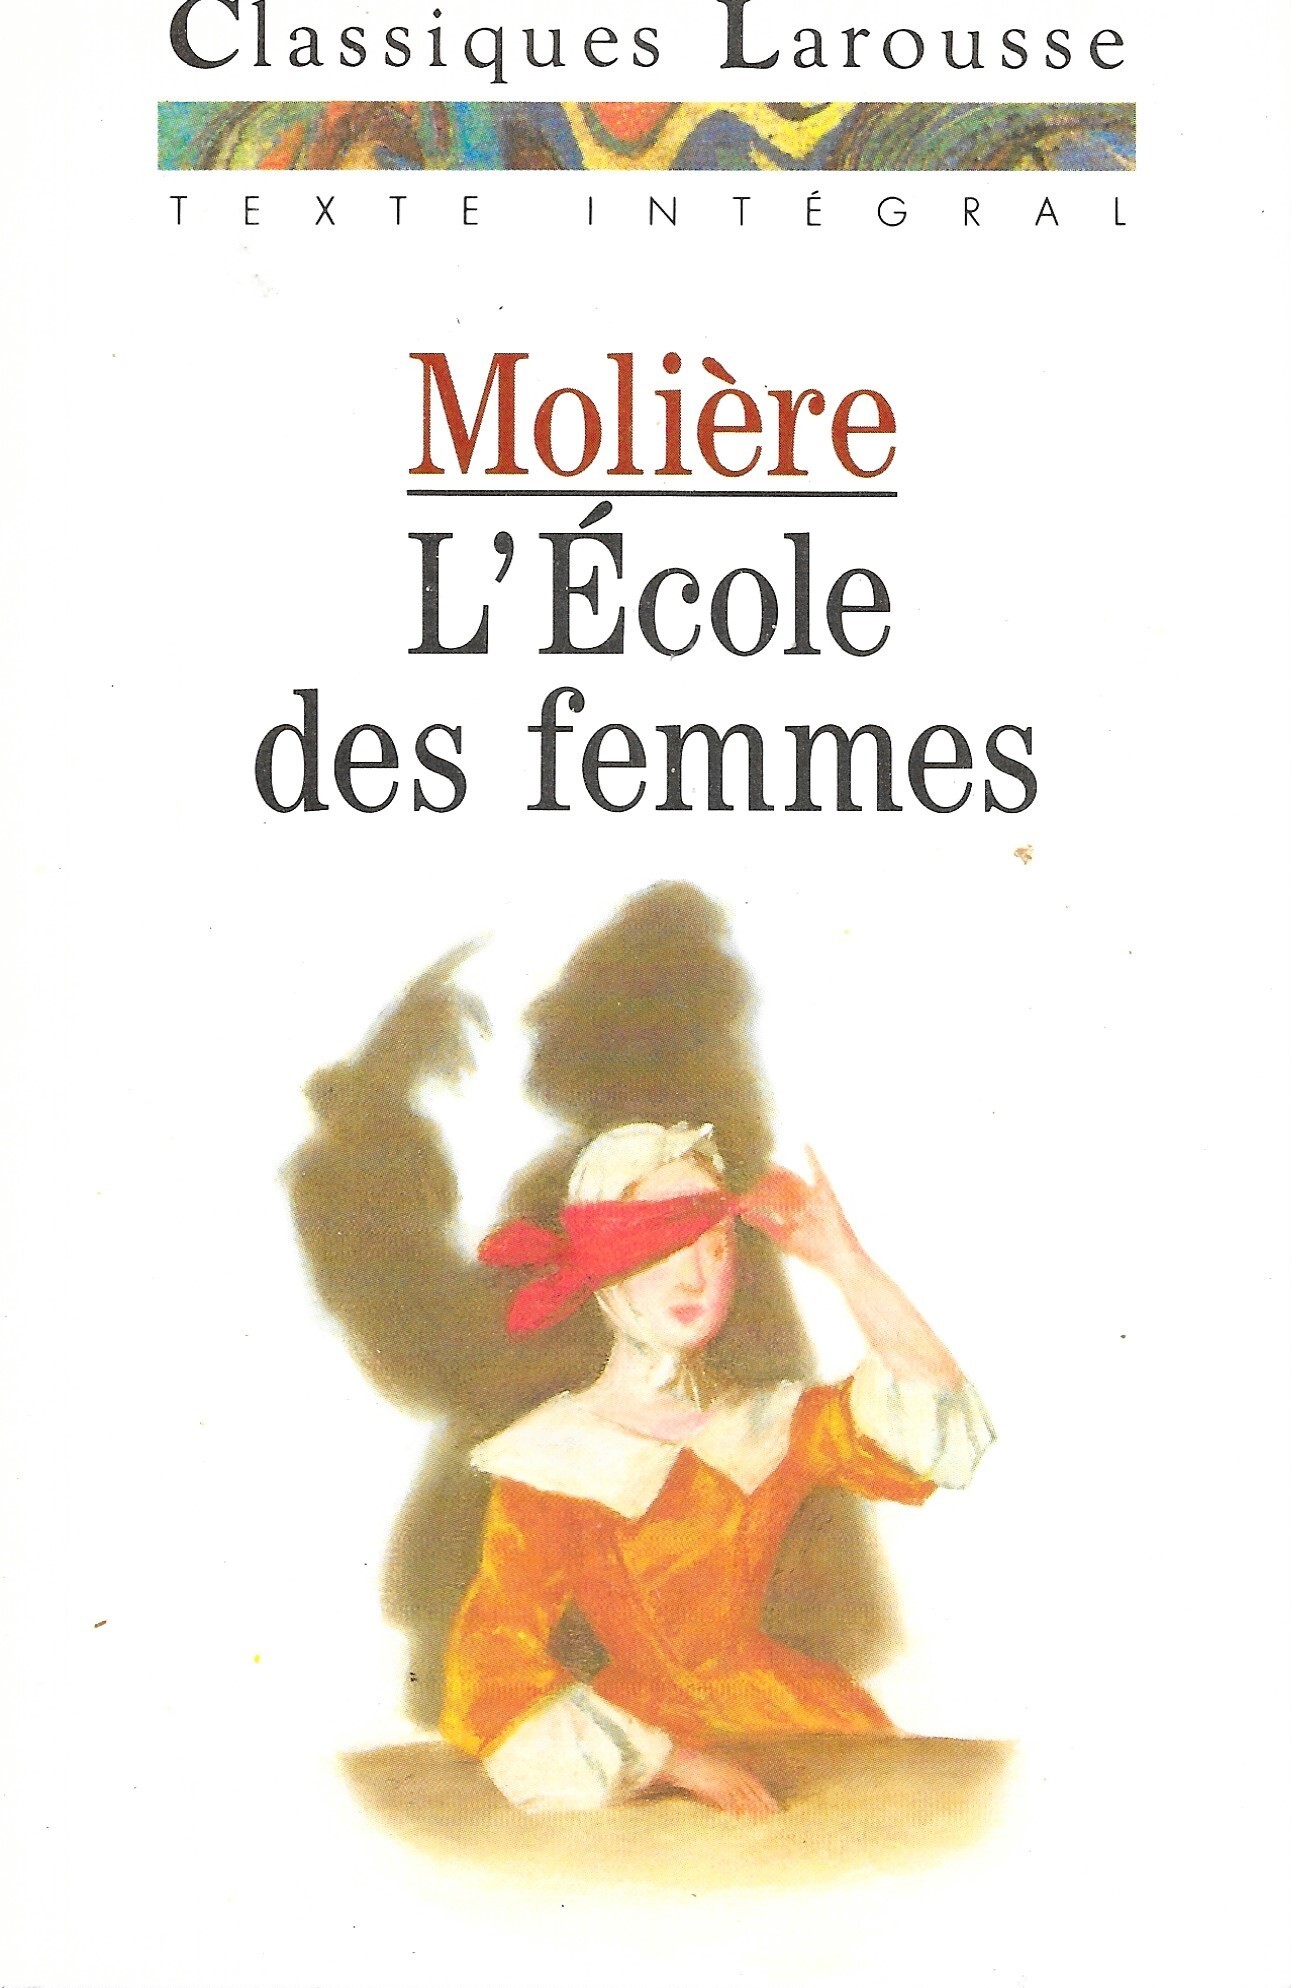 Couvertures, images et illustrations de L'École des femmes de Molière